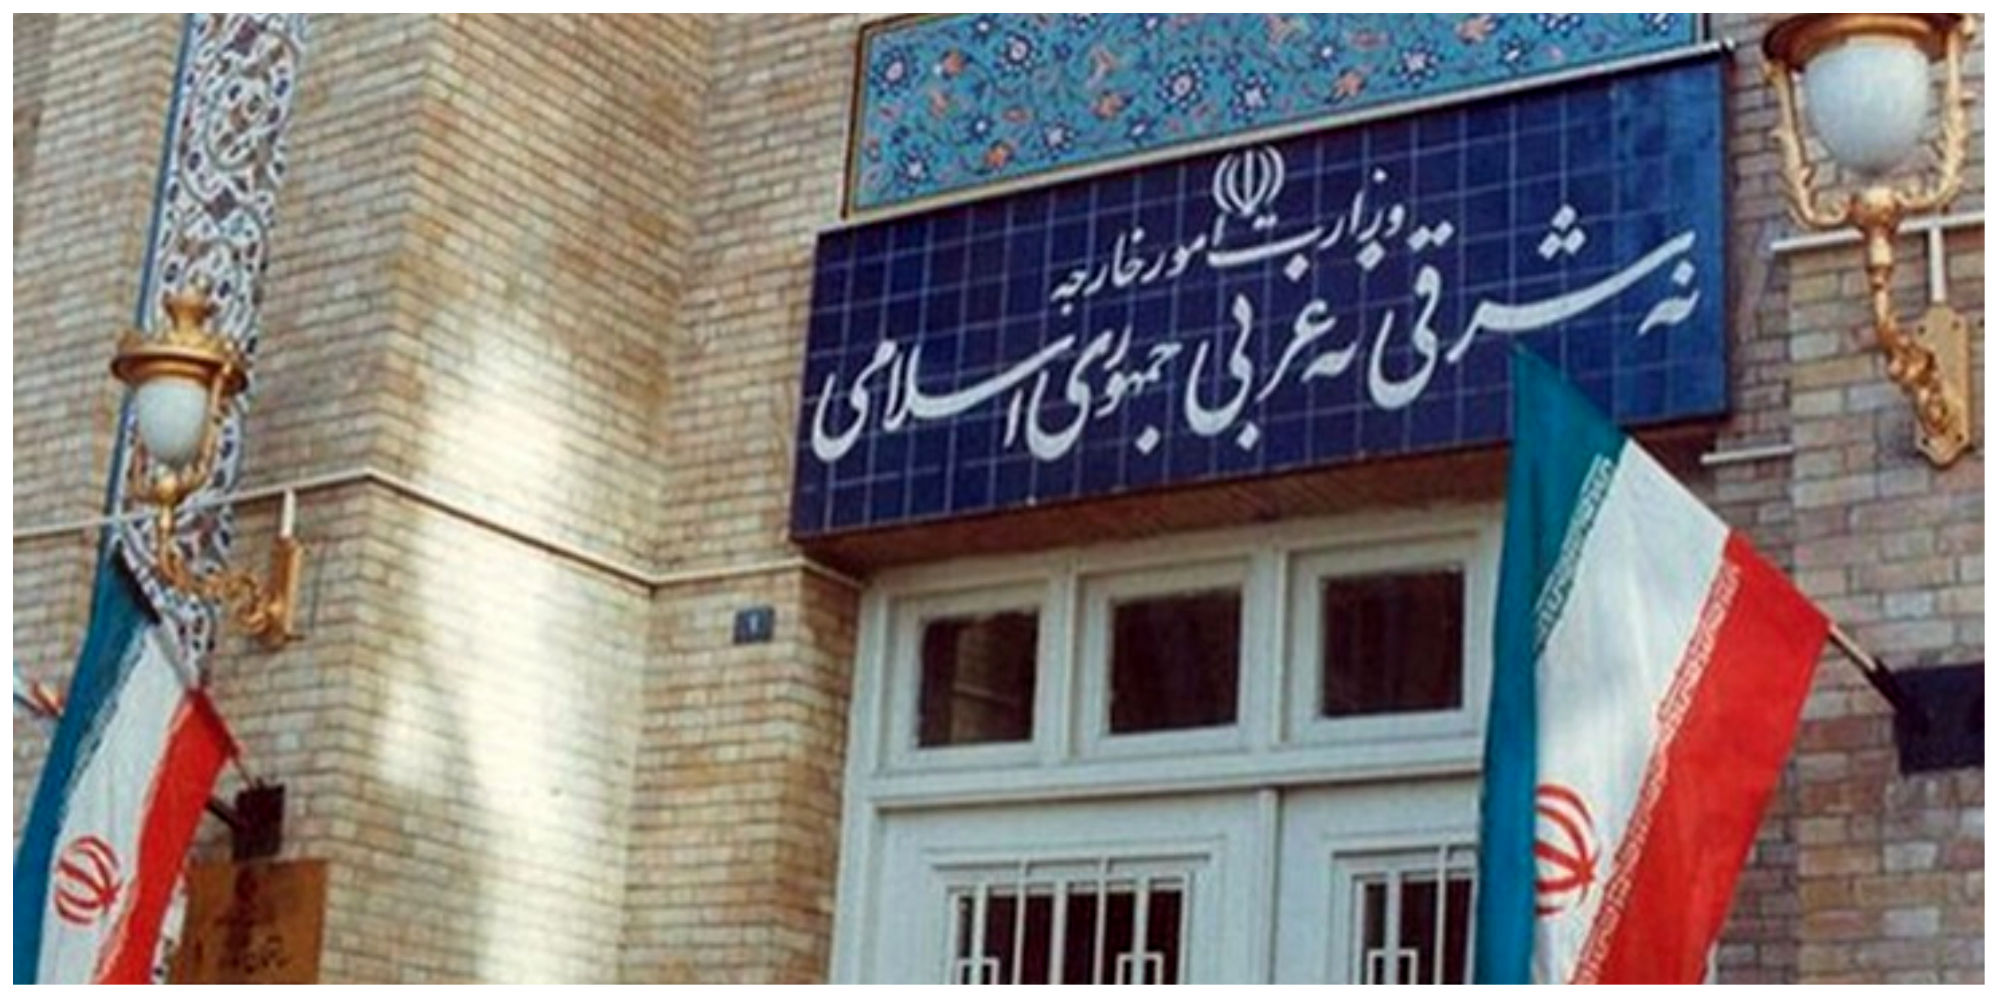 وزارت خارجه ایران بیانیه صادر کرد
